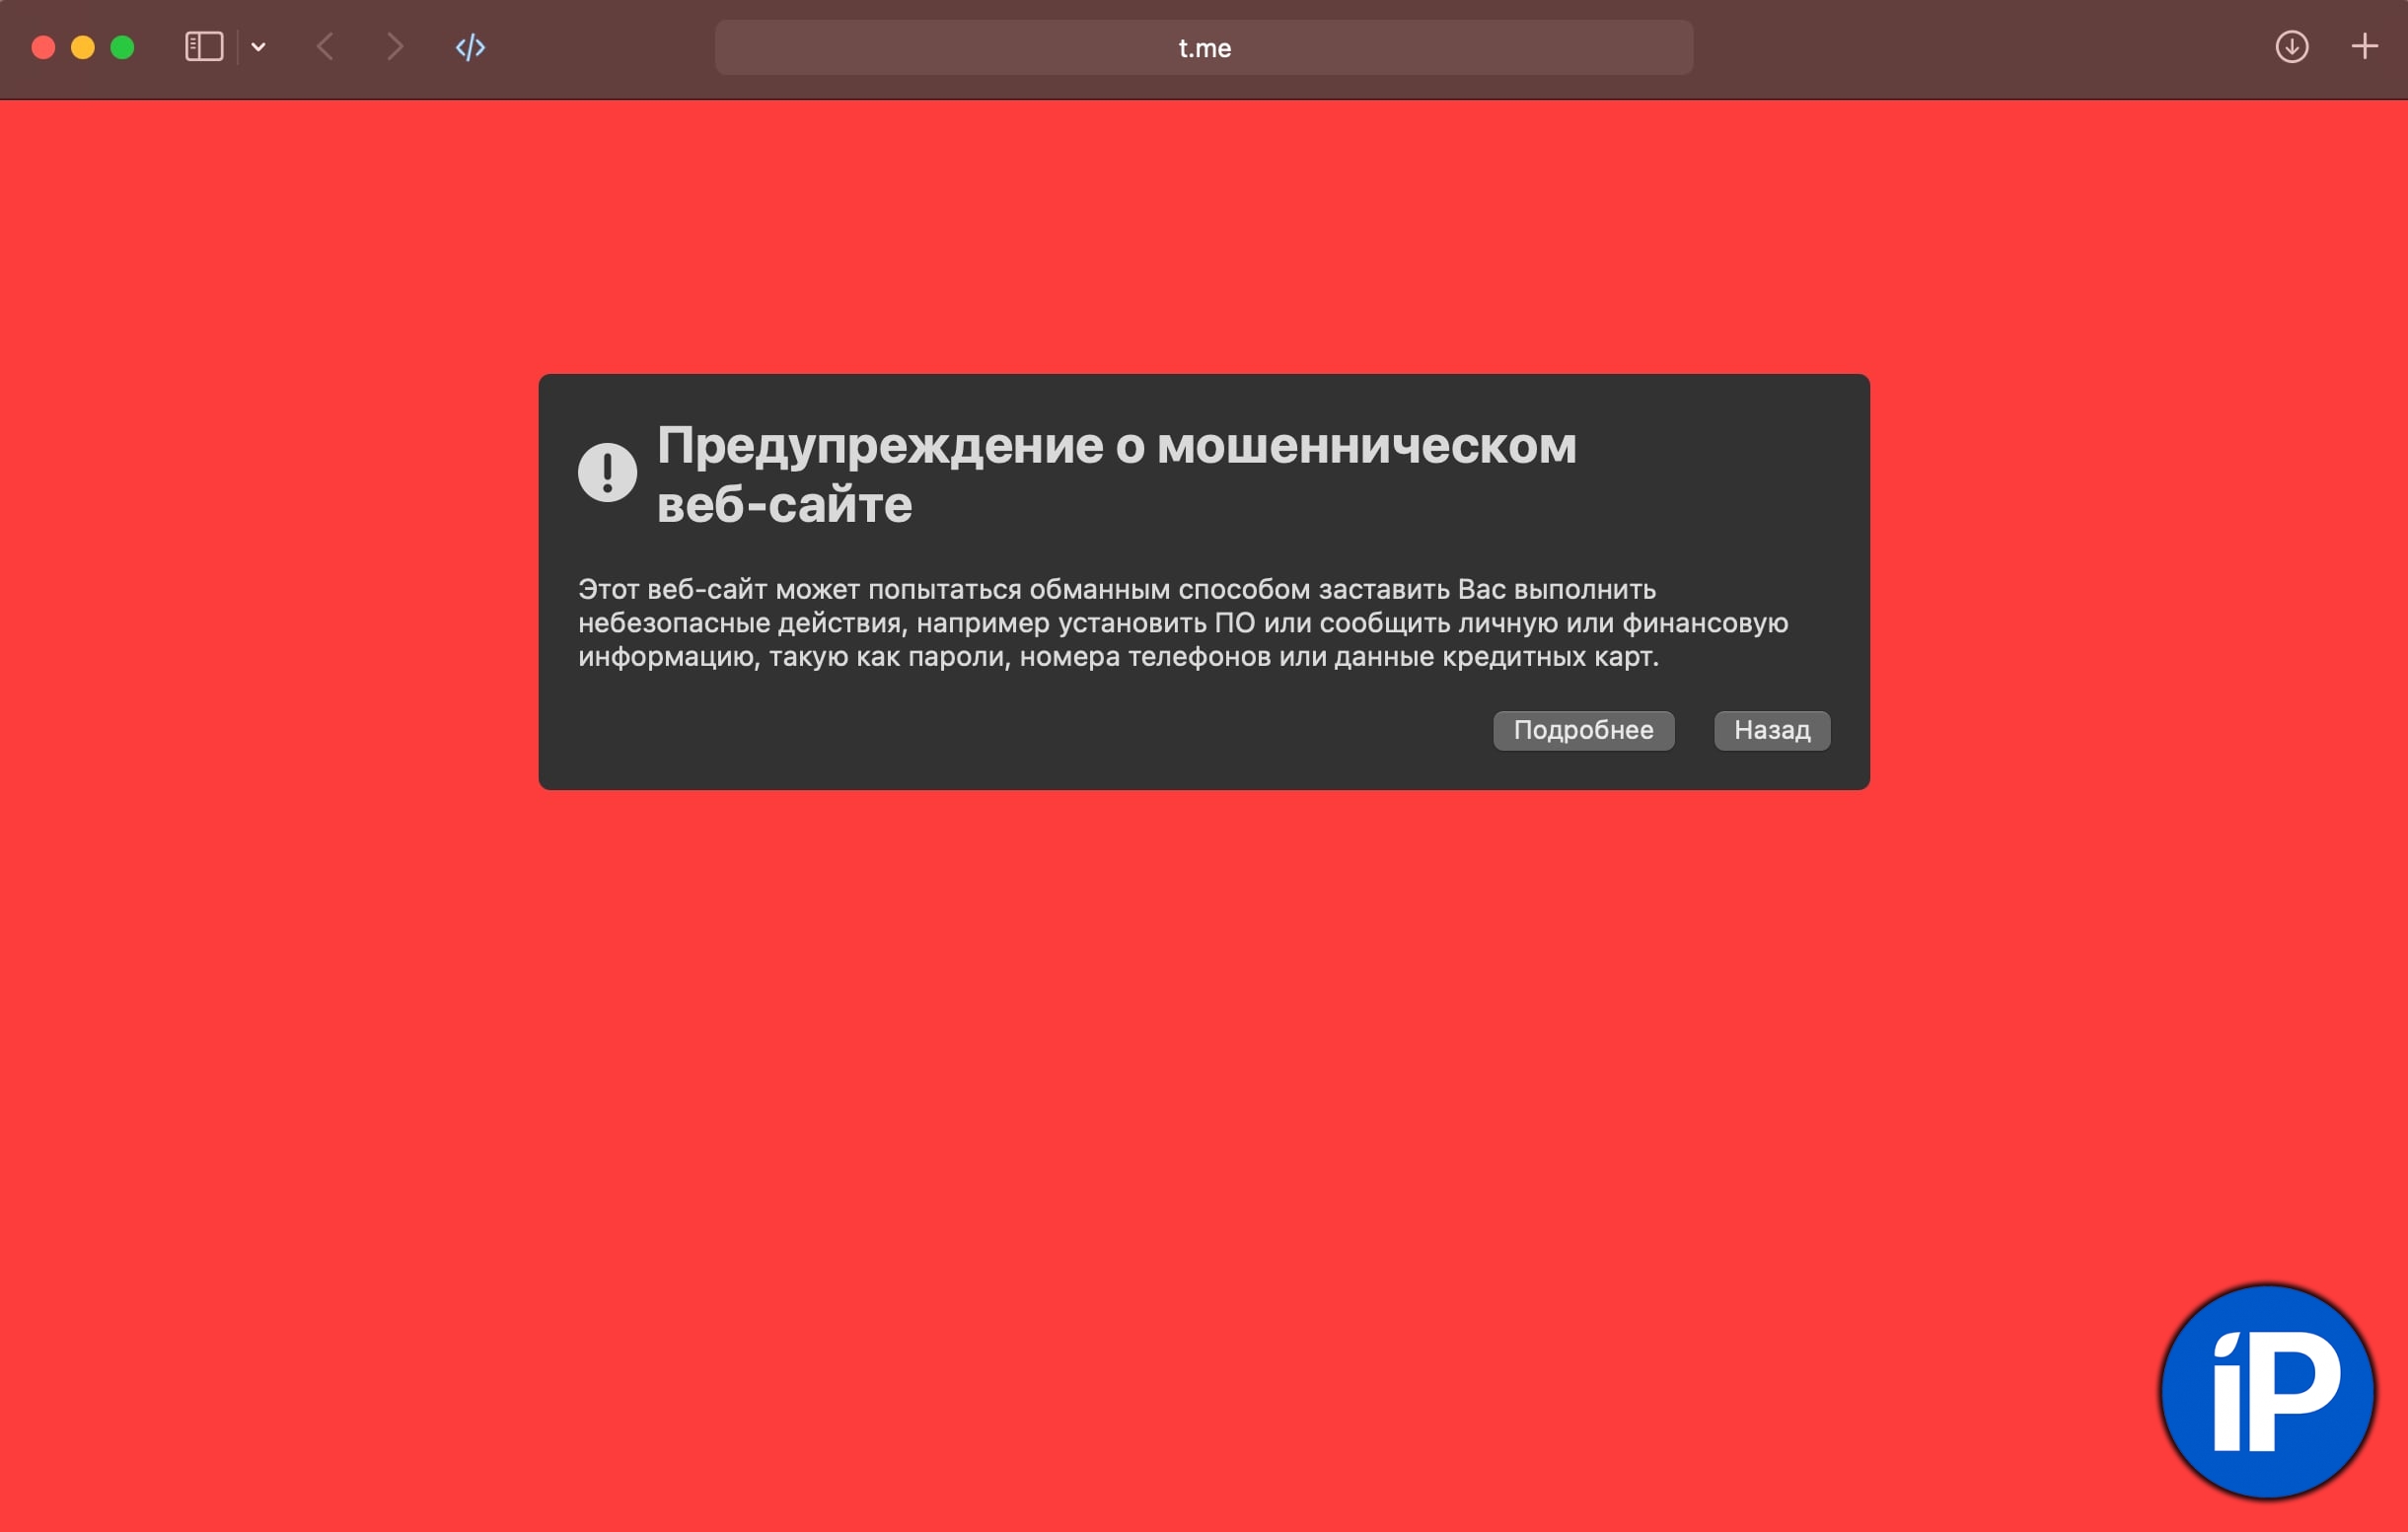 Предупреждение о мошенническом сайте. Safari заблокировал домен t.me, на котором доступен Telegram